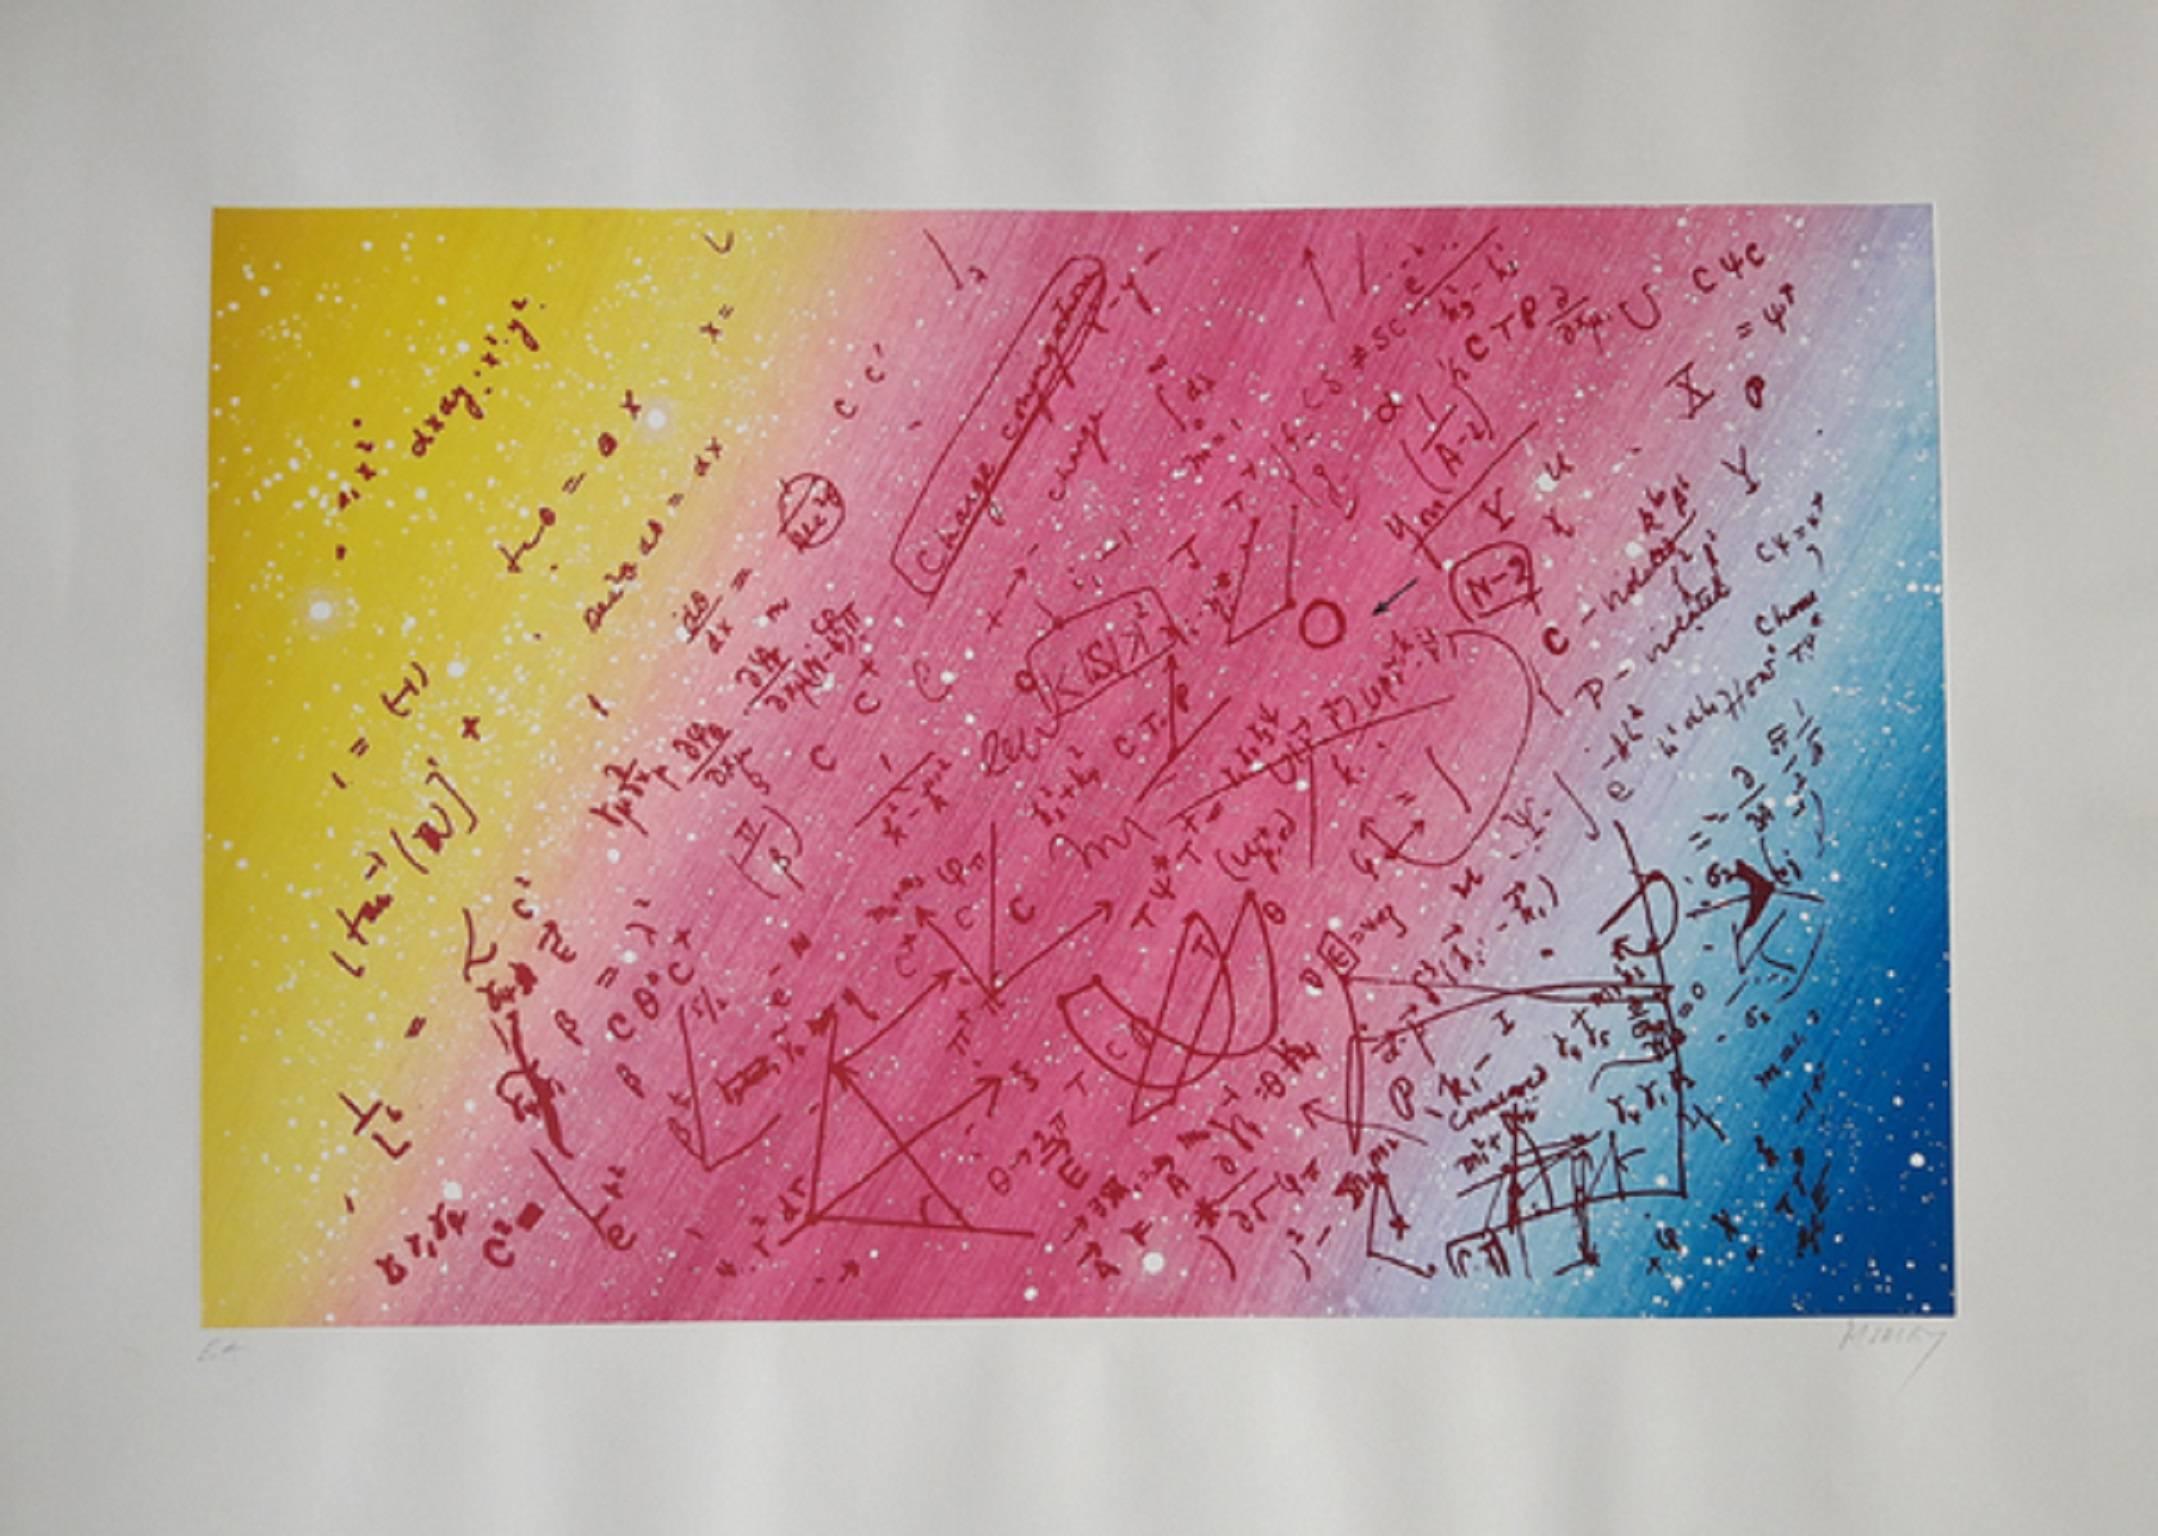 Jacques Monory Abstract Drawing - Fouillis mathématique pour un univers en enroulement torsadé